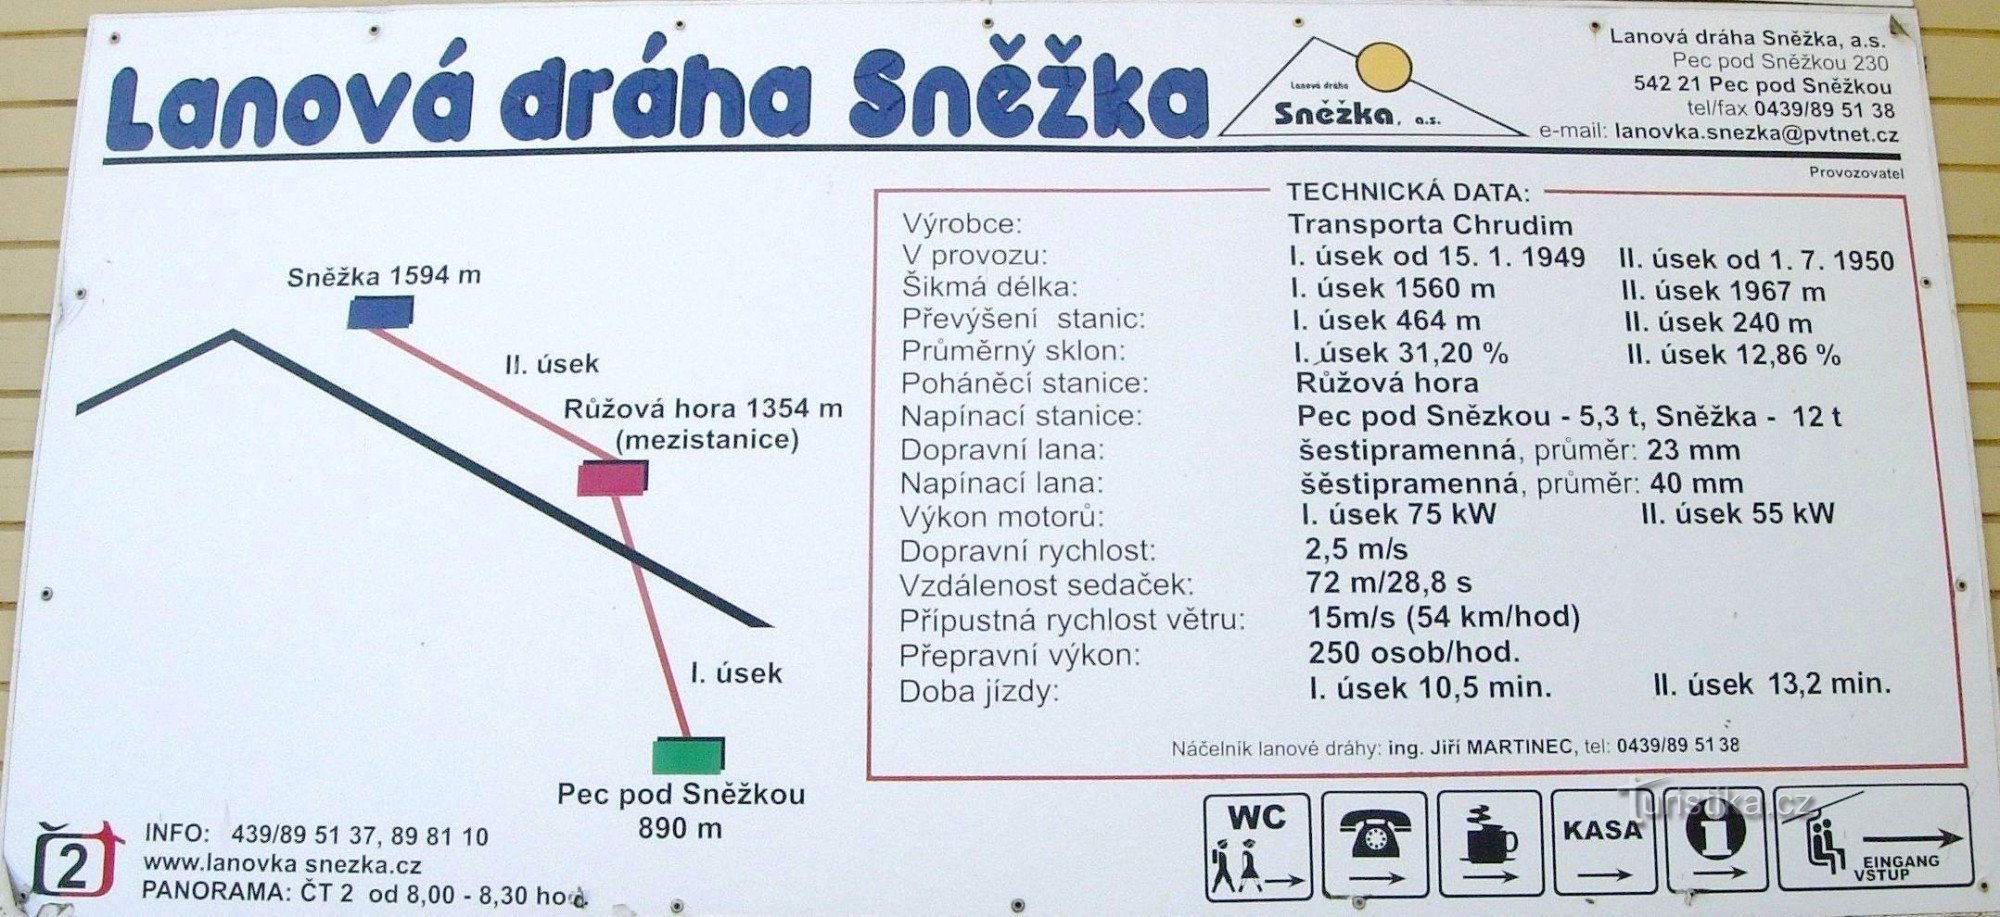 Technical data of the Sněžka cable car